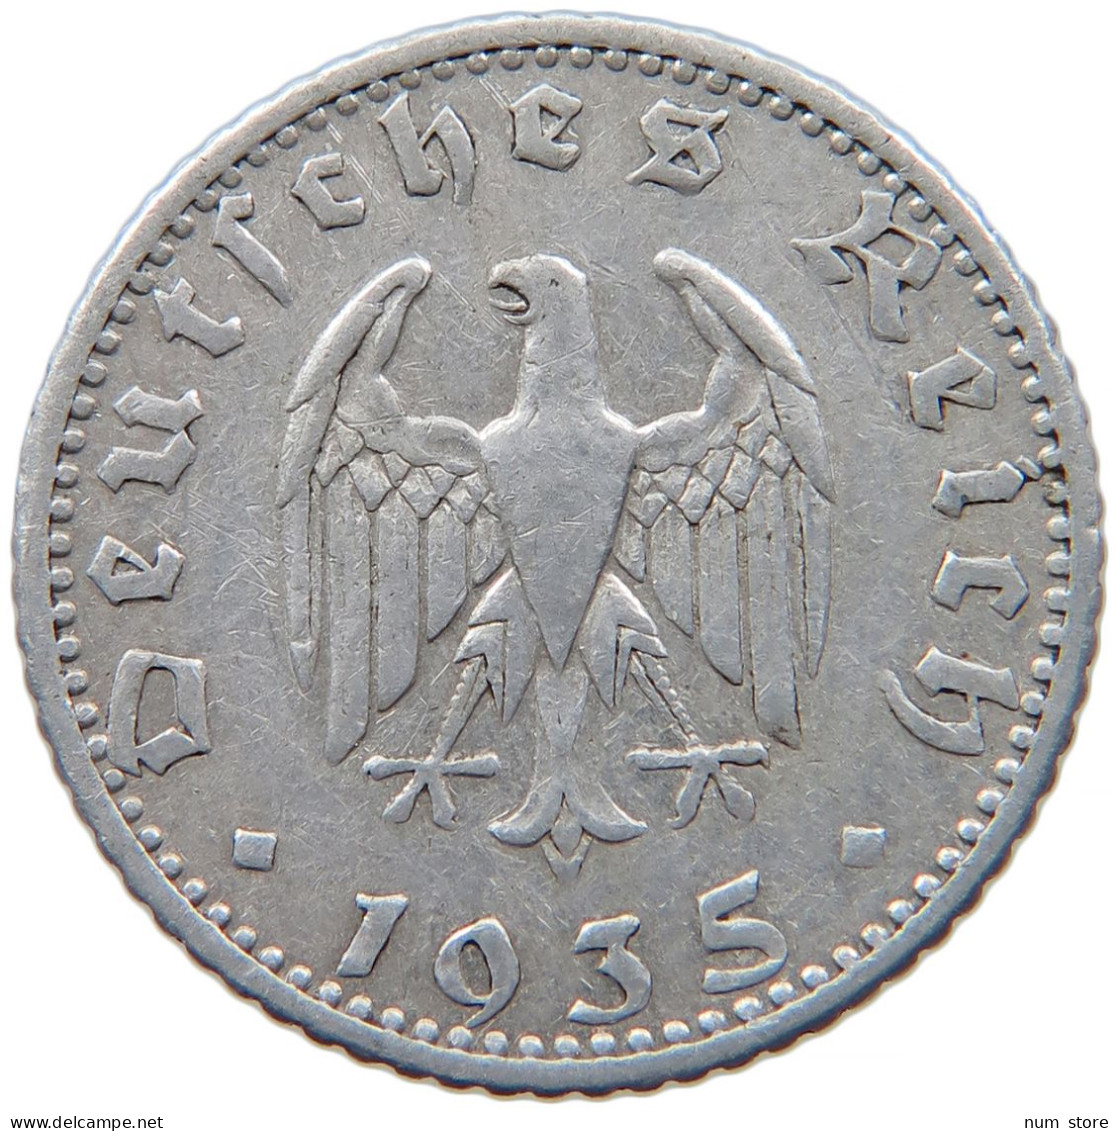 GERMANY 50 REICHSPFENNIG 1935 E #s089 0545 - 50 Reichspfennig